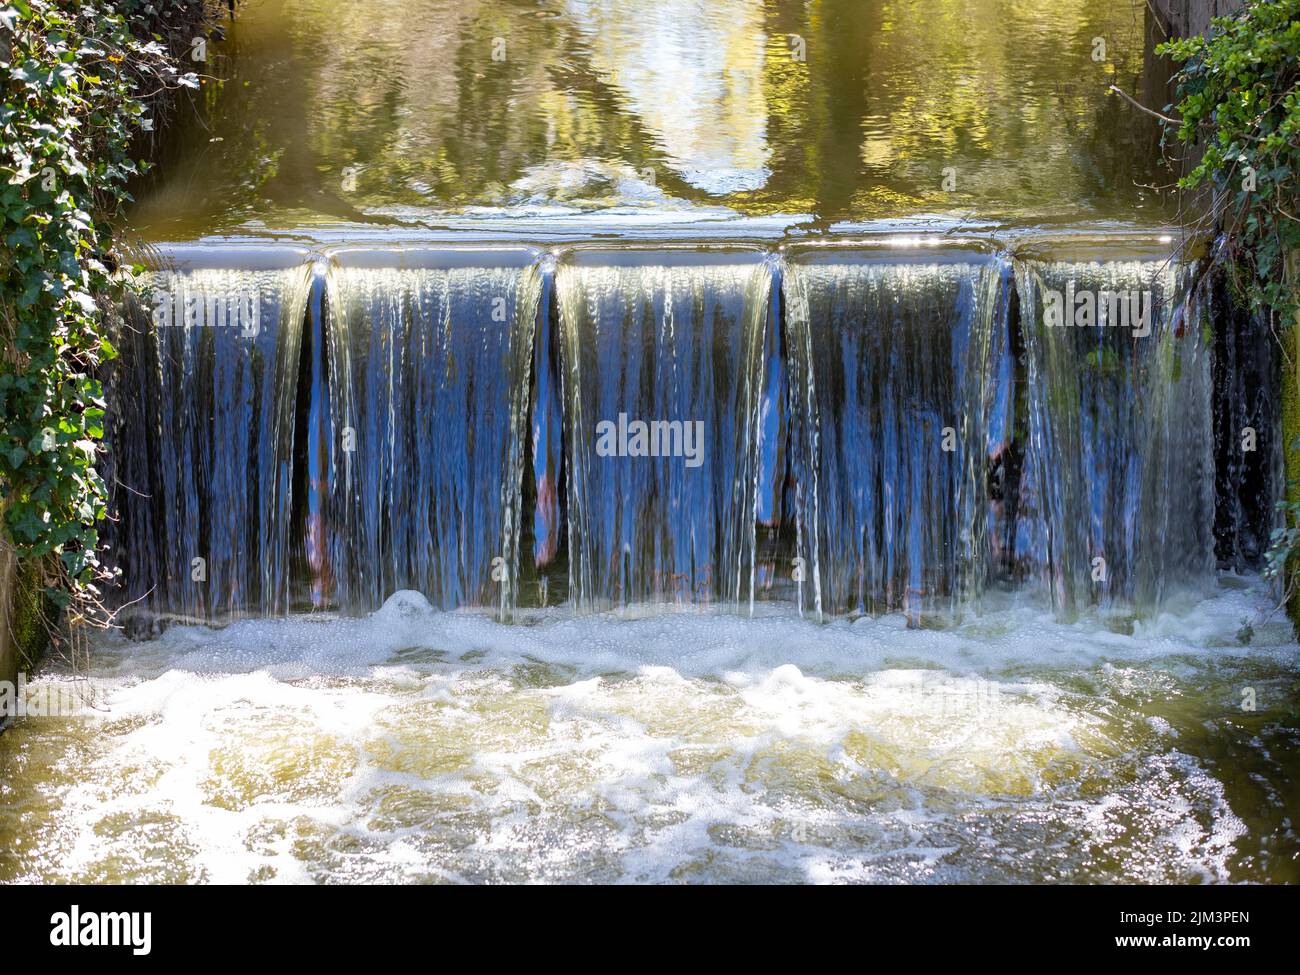 Eine malerische Aussicht auf einen künstlichen Wasserfall auf einem Bach Stockfoto